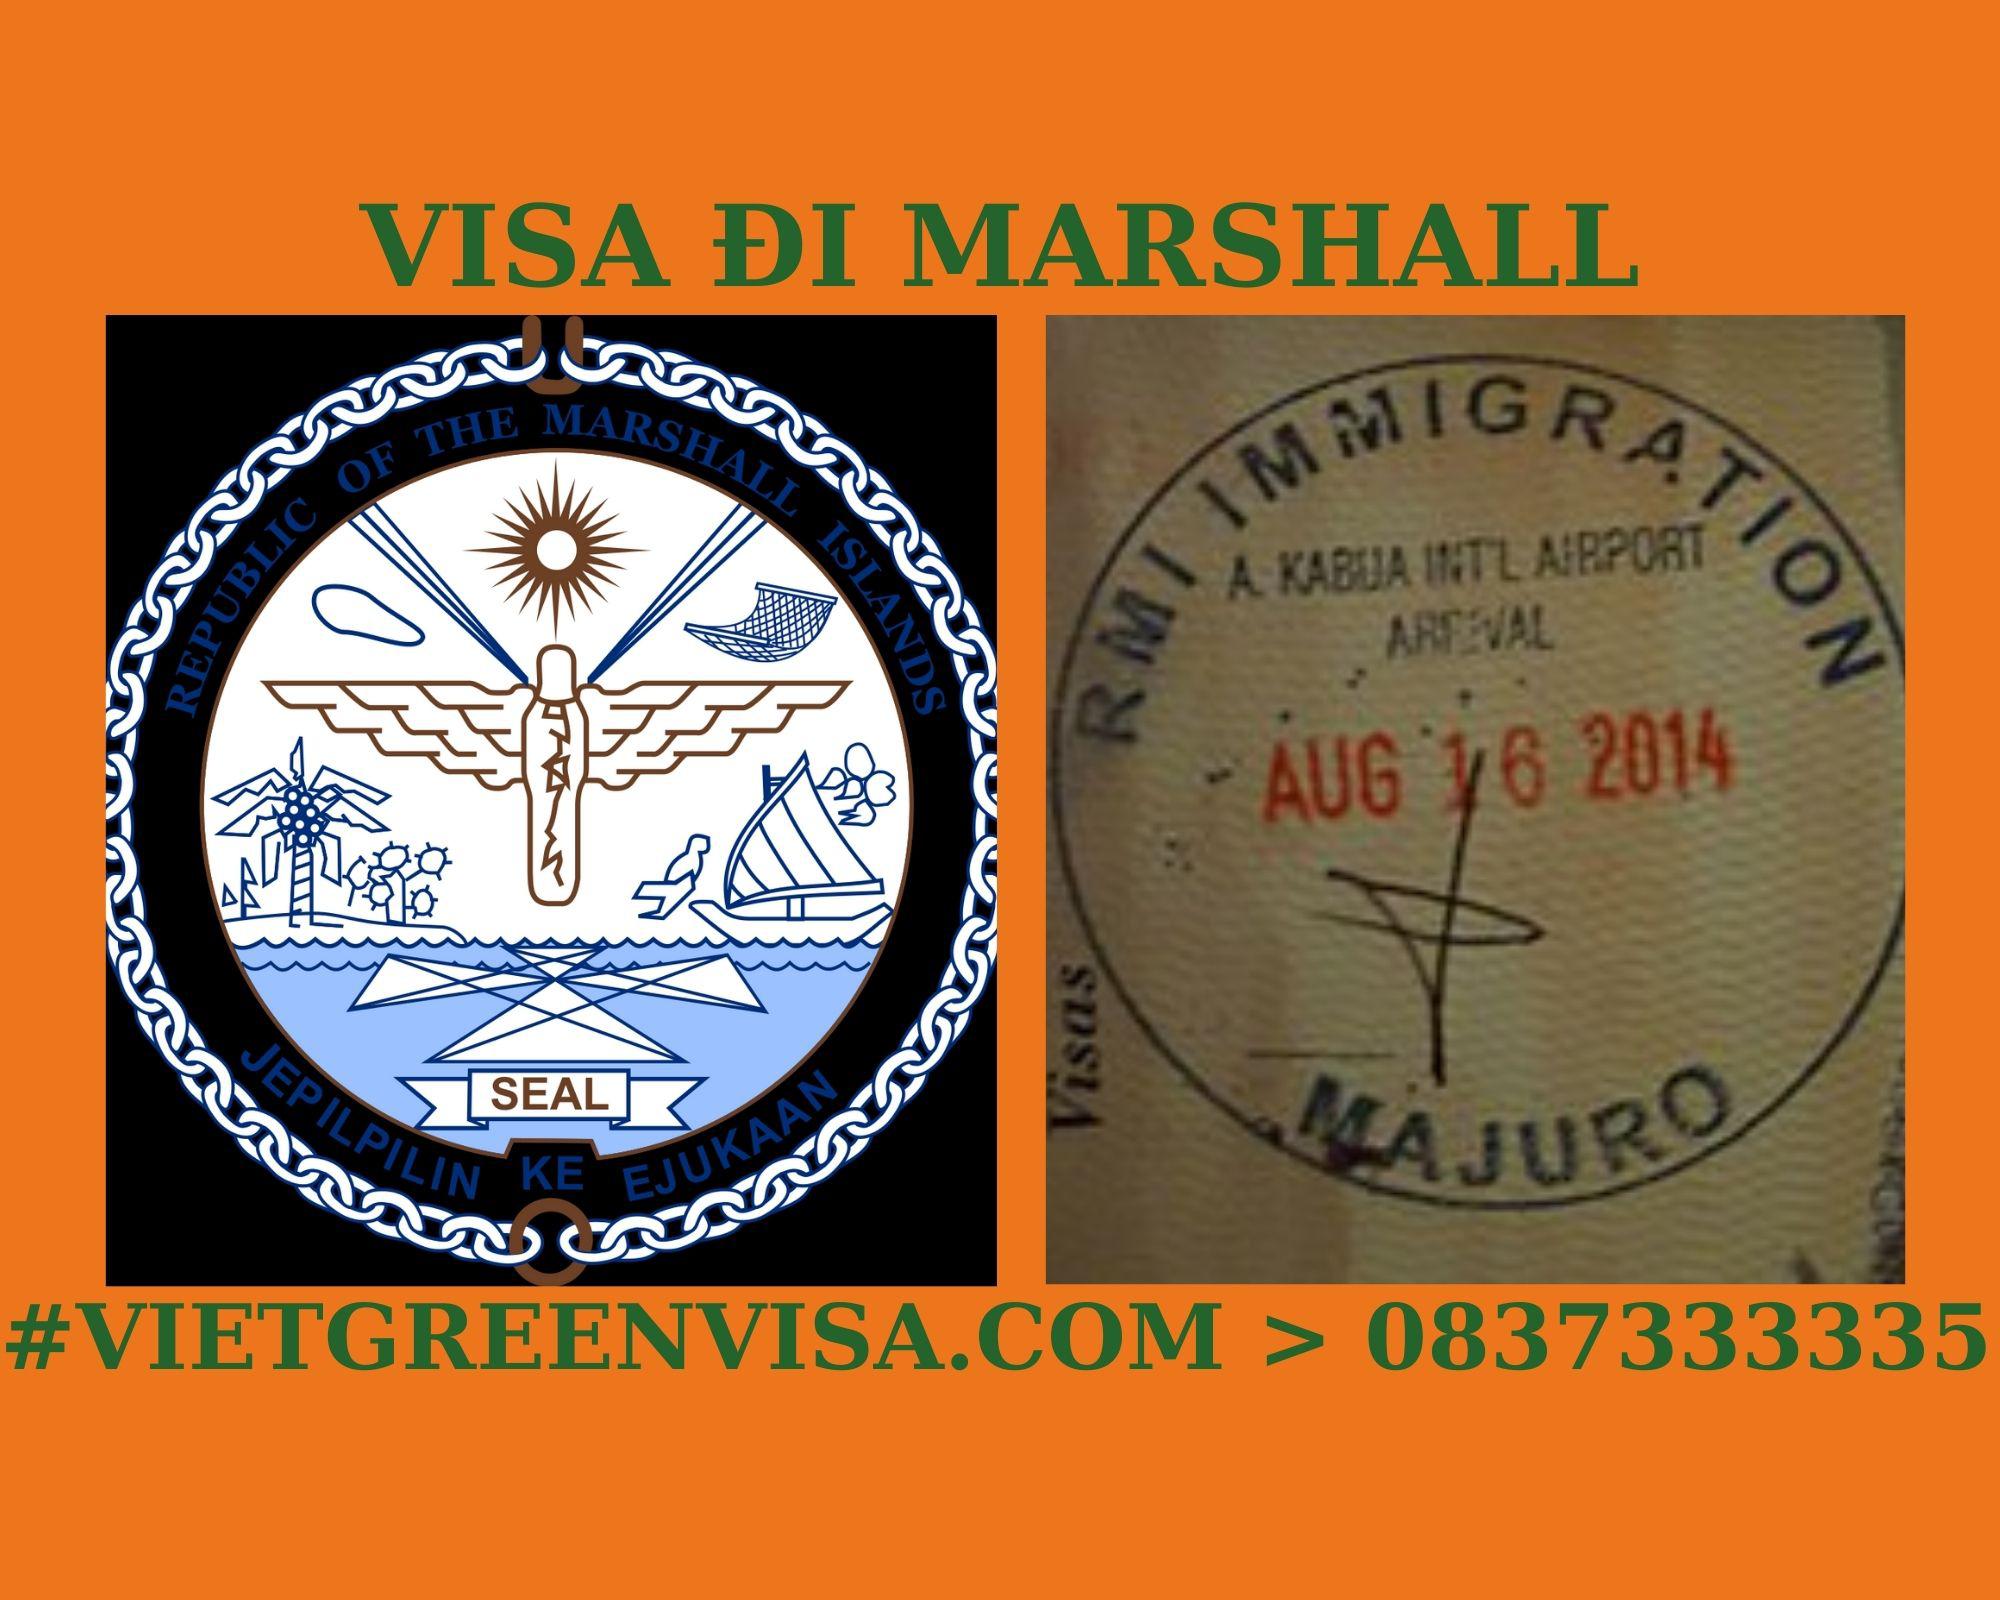 Dịch vụ xin Visa sang Marshall tổ chức đám cưới, kết hôn